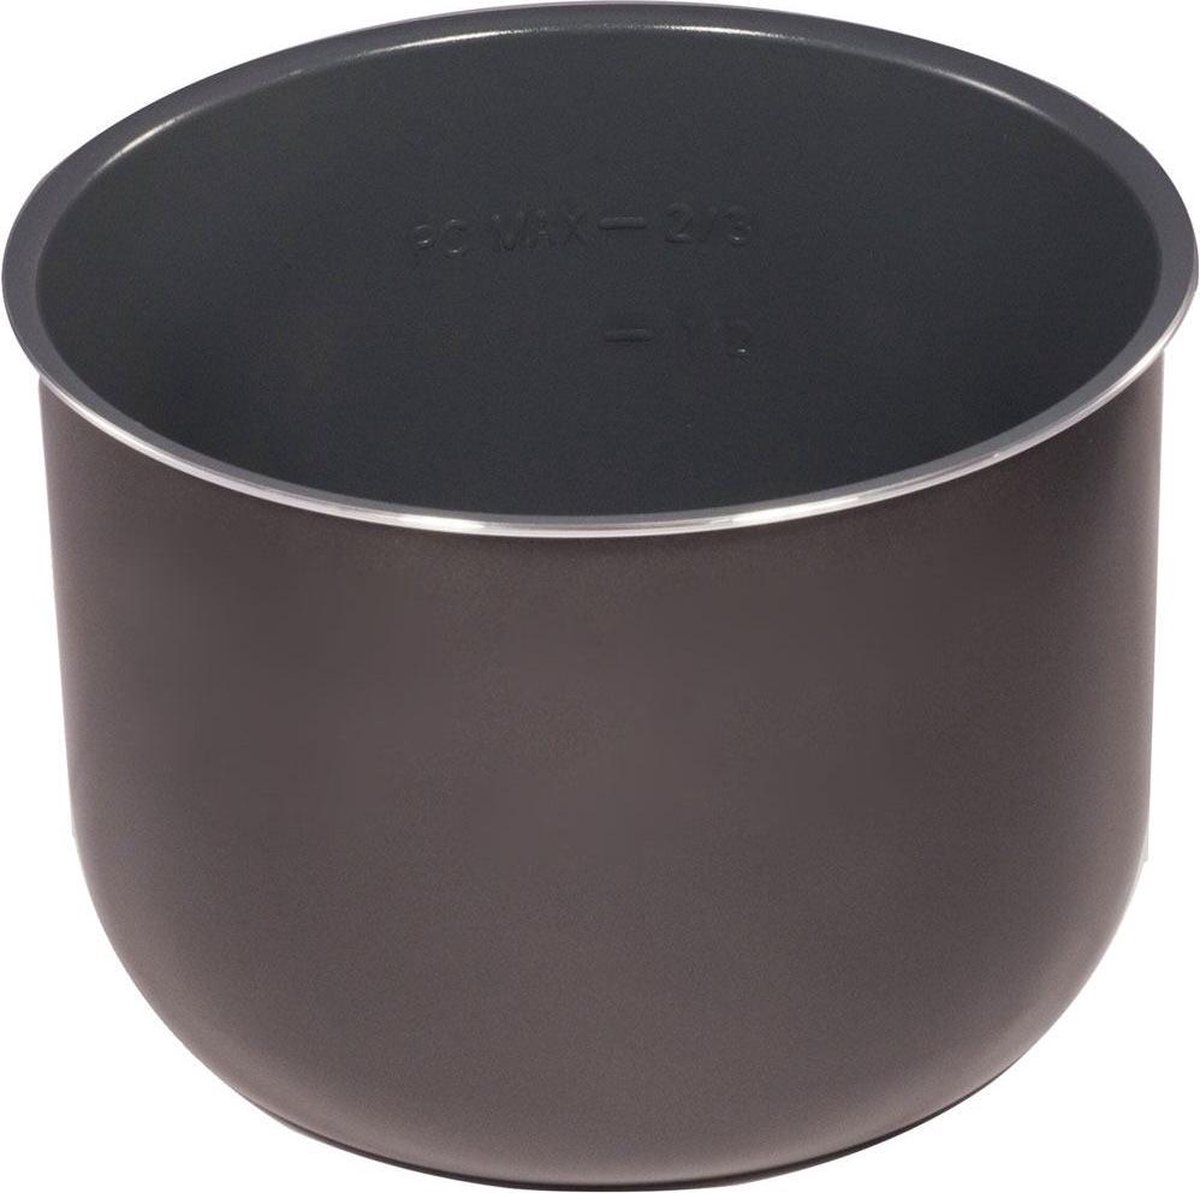 Instant Pot binnen pan keramisch (7,6 liter) - Instant Pot